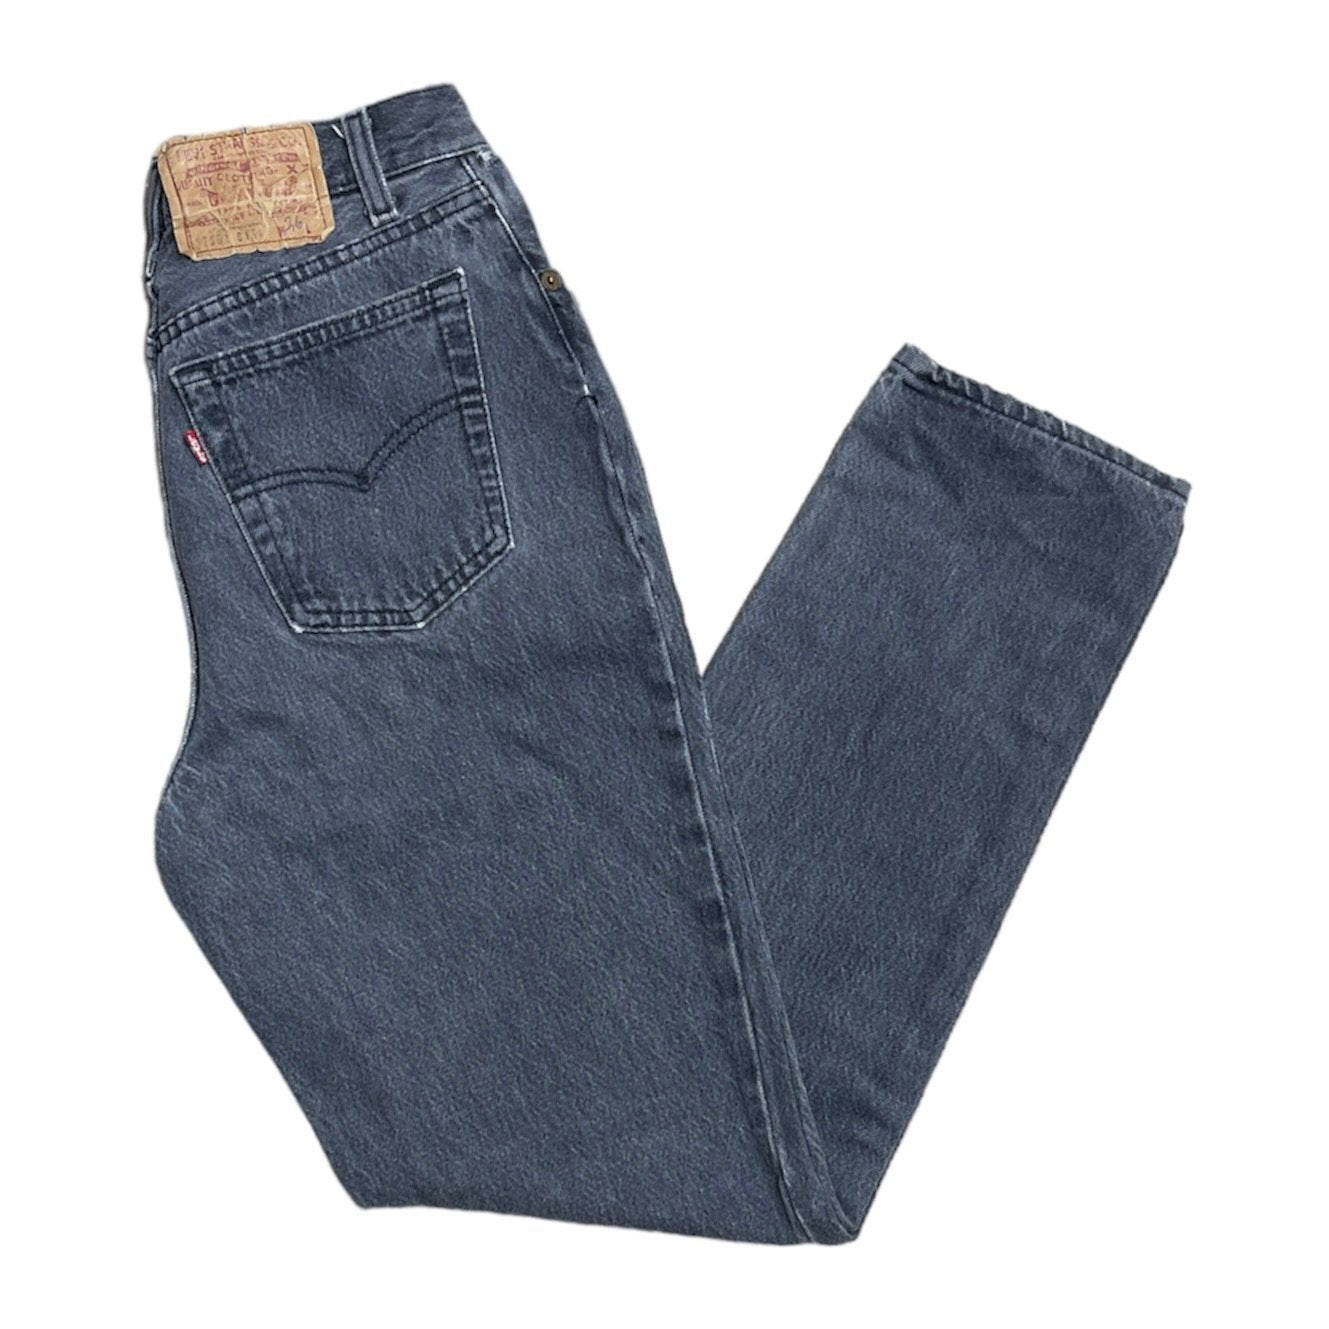 Vintage Levis Black/Grey Jeans (W26/L30)